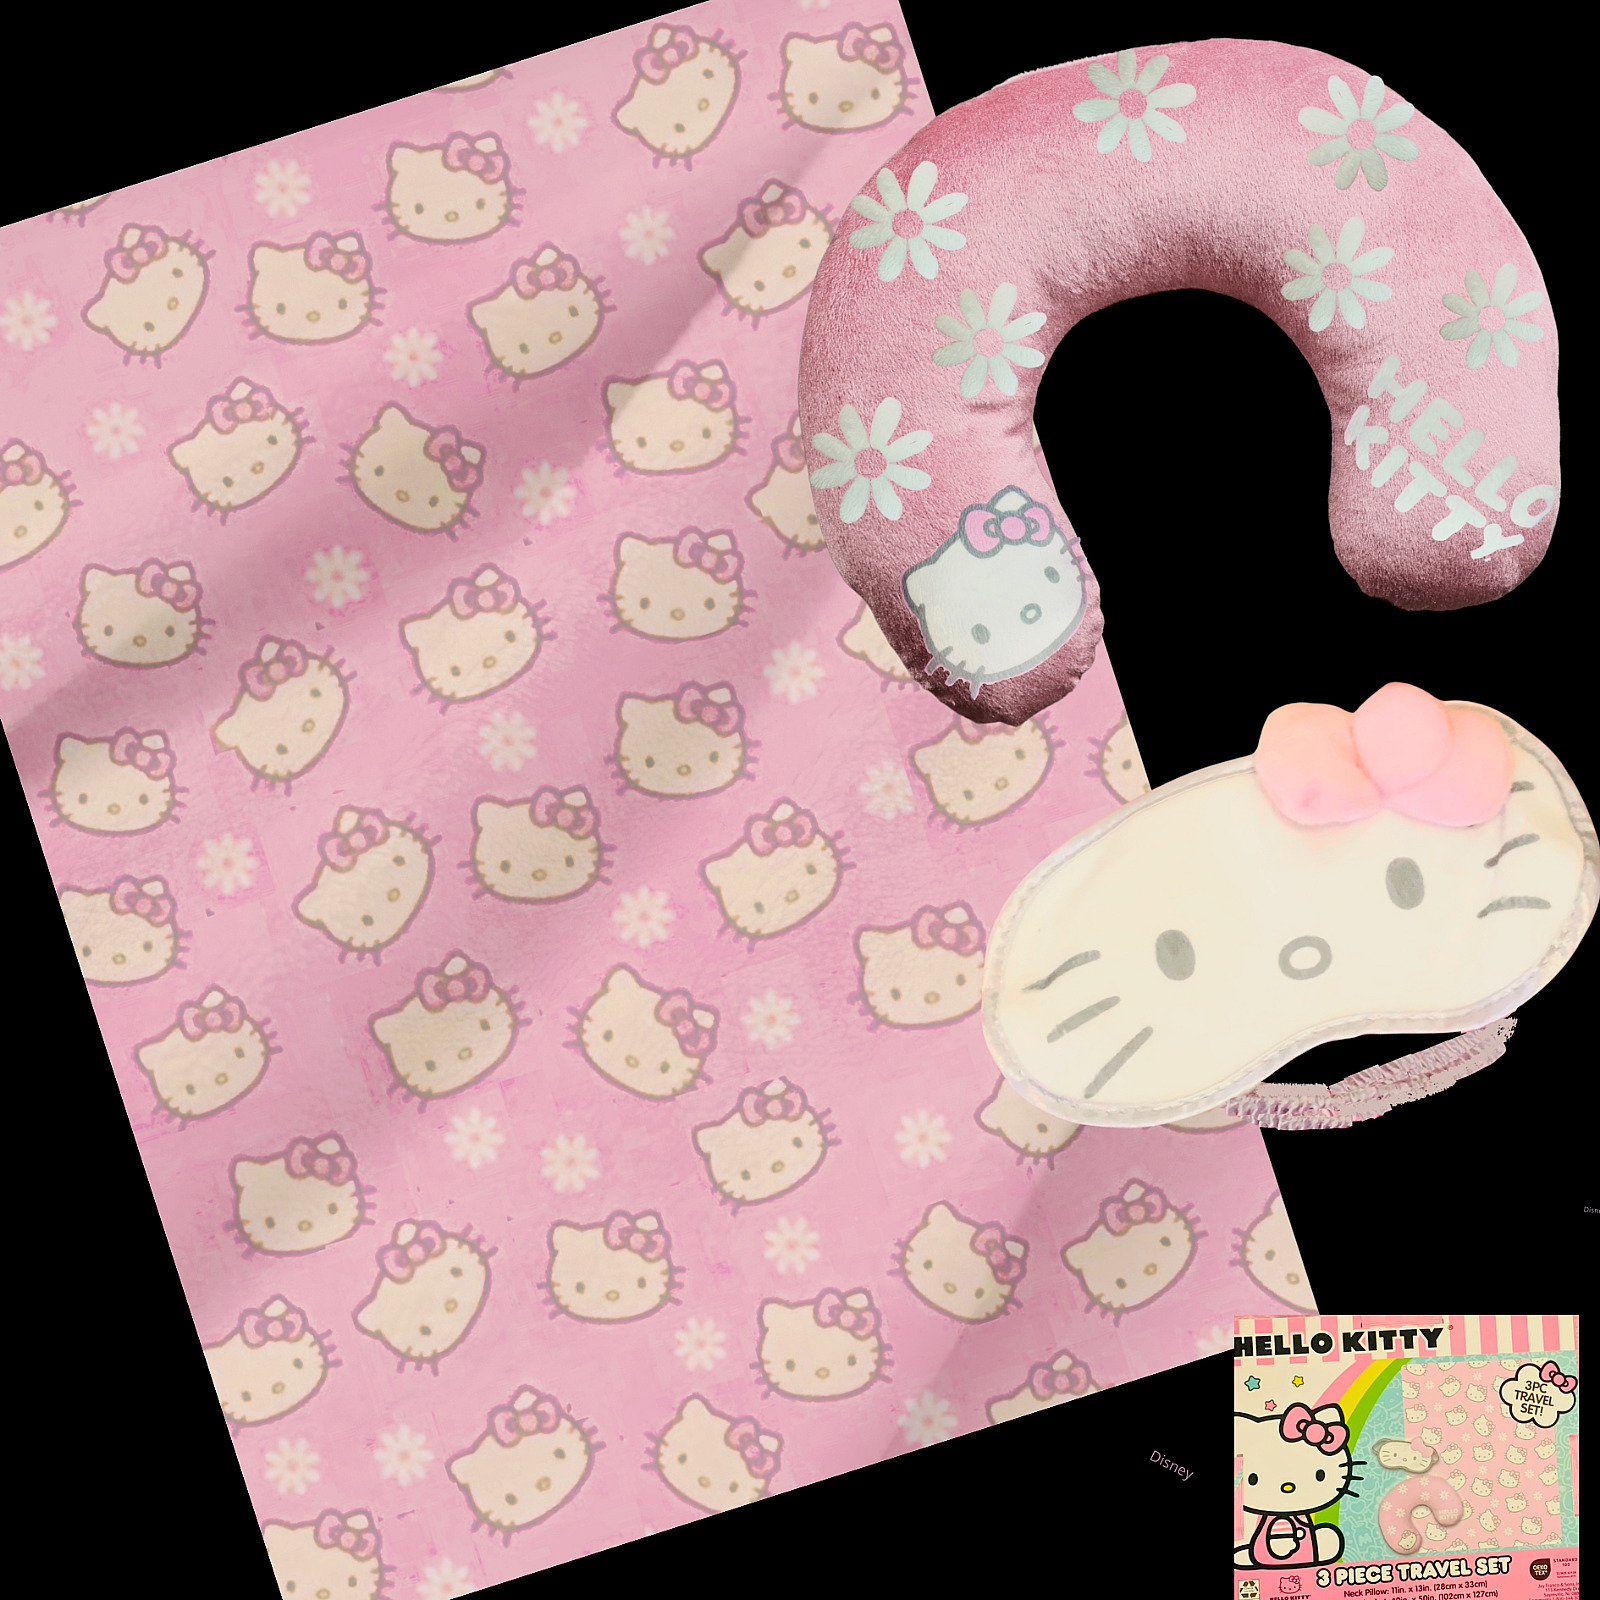 Sanrio Hello Kitty Face Pink Bow Throw Blanket Set, Travel Pillow 3 Pc Set, NEW